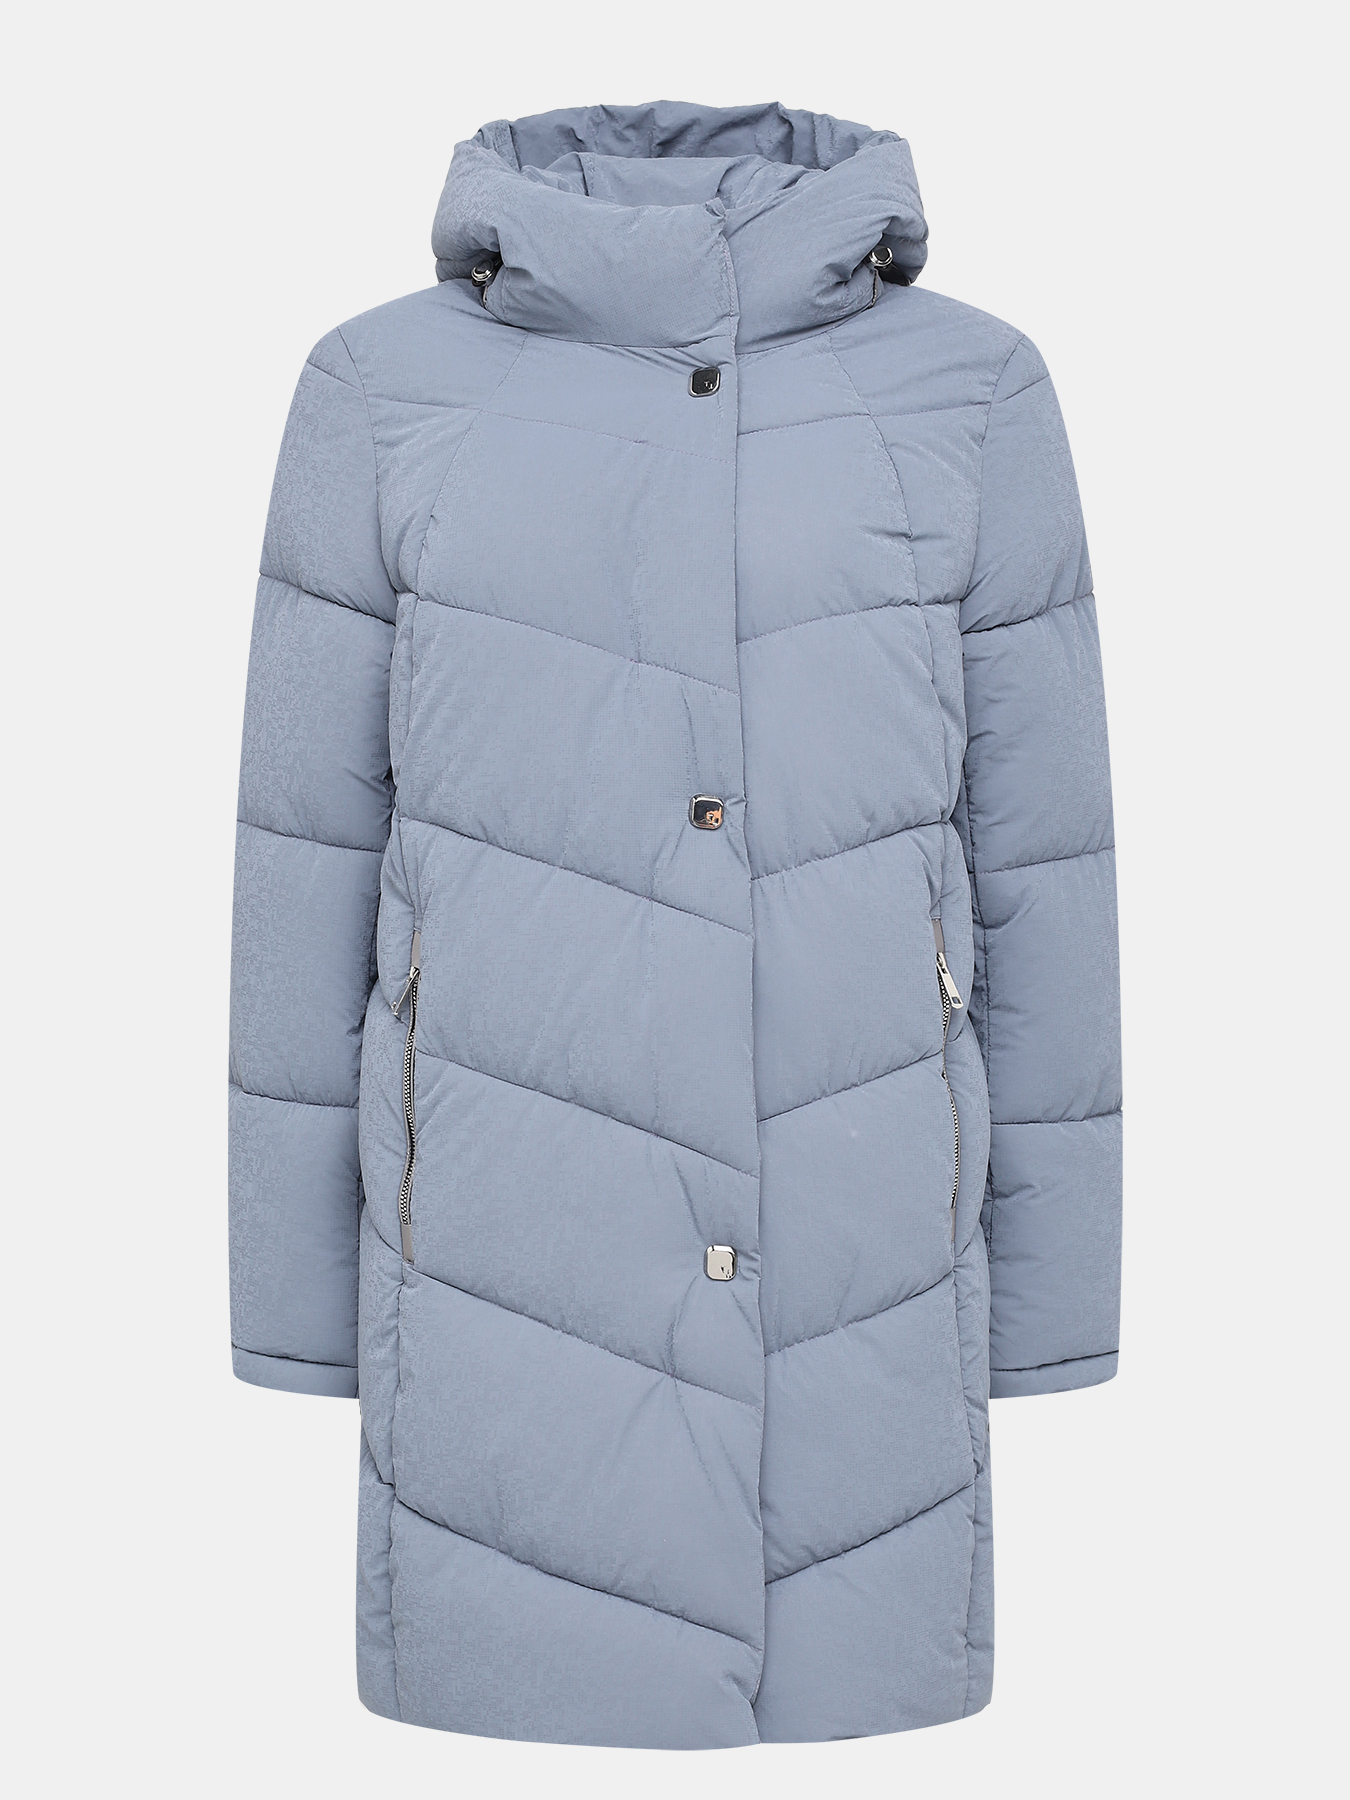 Пальто зимнее Maritta 433624-022, цвет голубой, размер 48